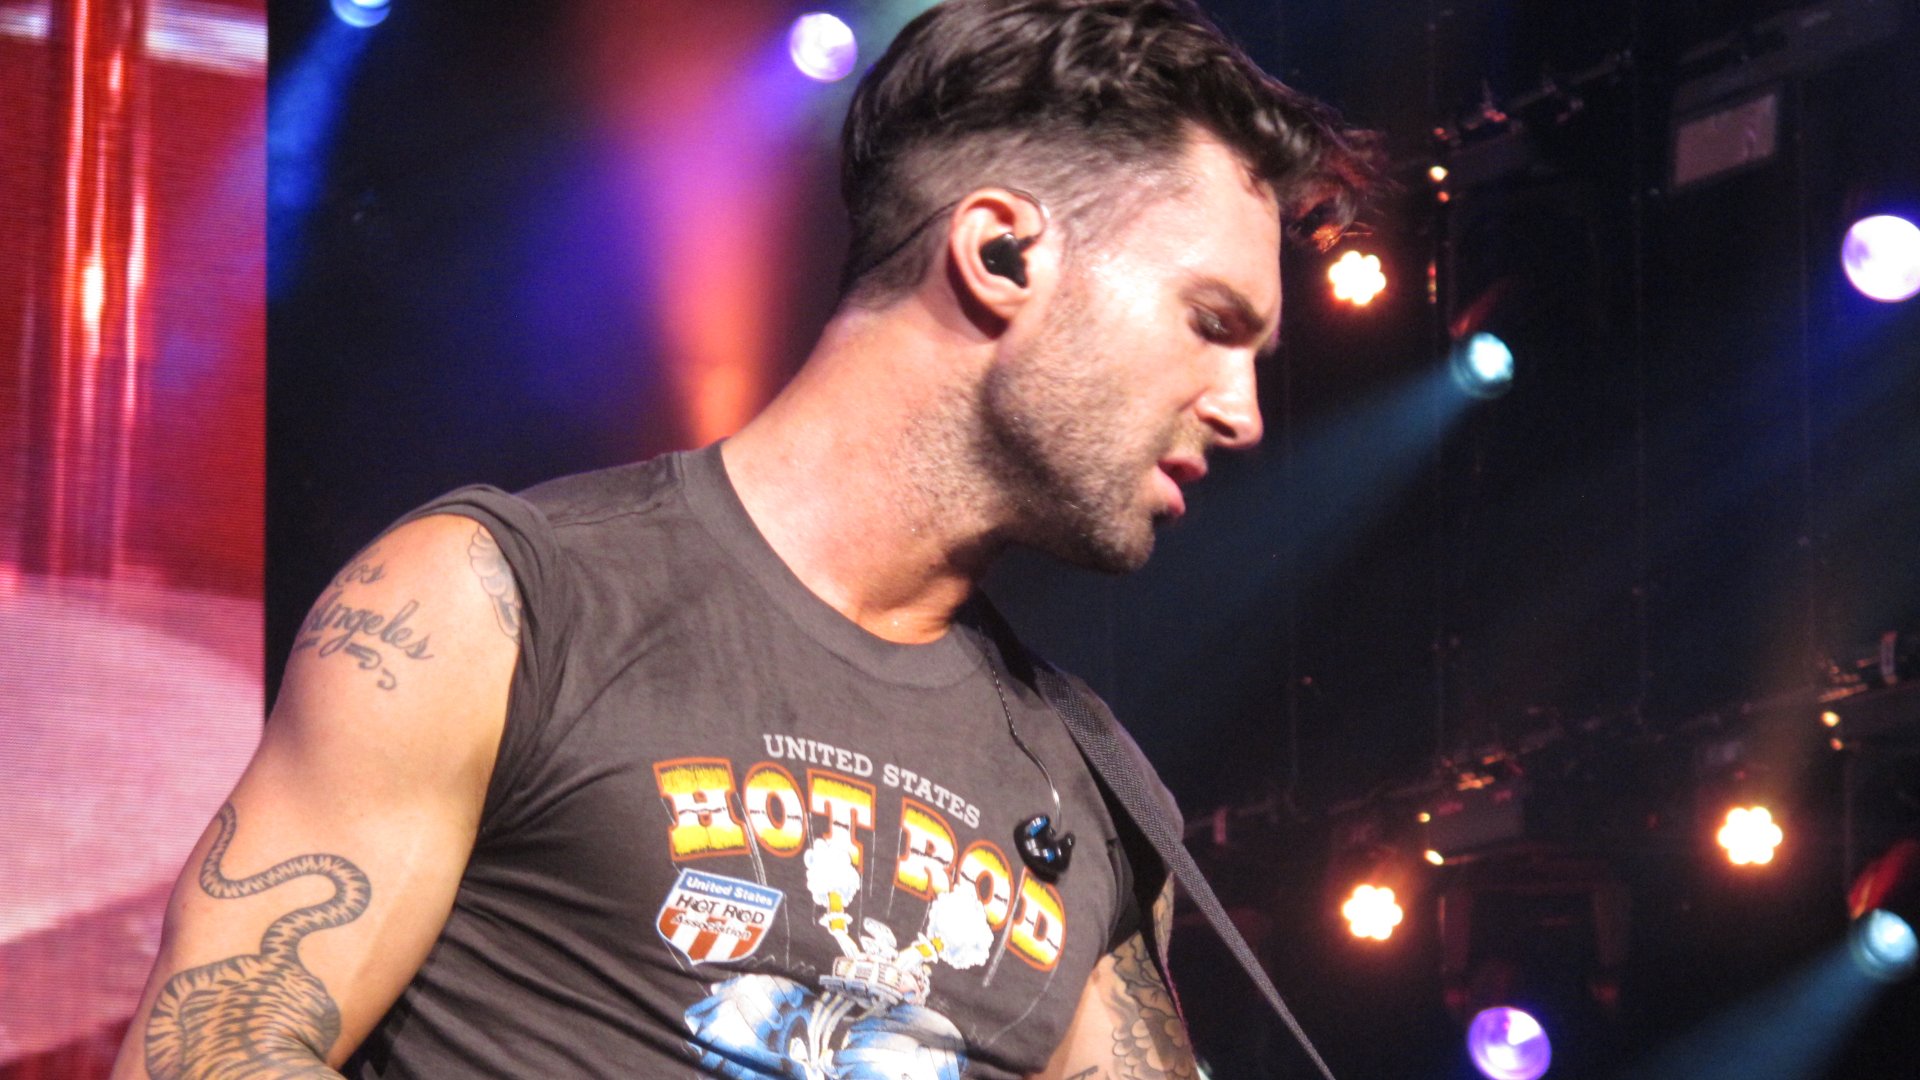 Concert Maroon 5 a Barcelona: descobreix els escàndols més sonats del vocalista Adam Levine